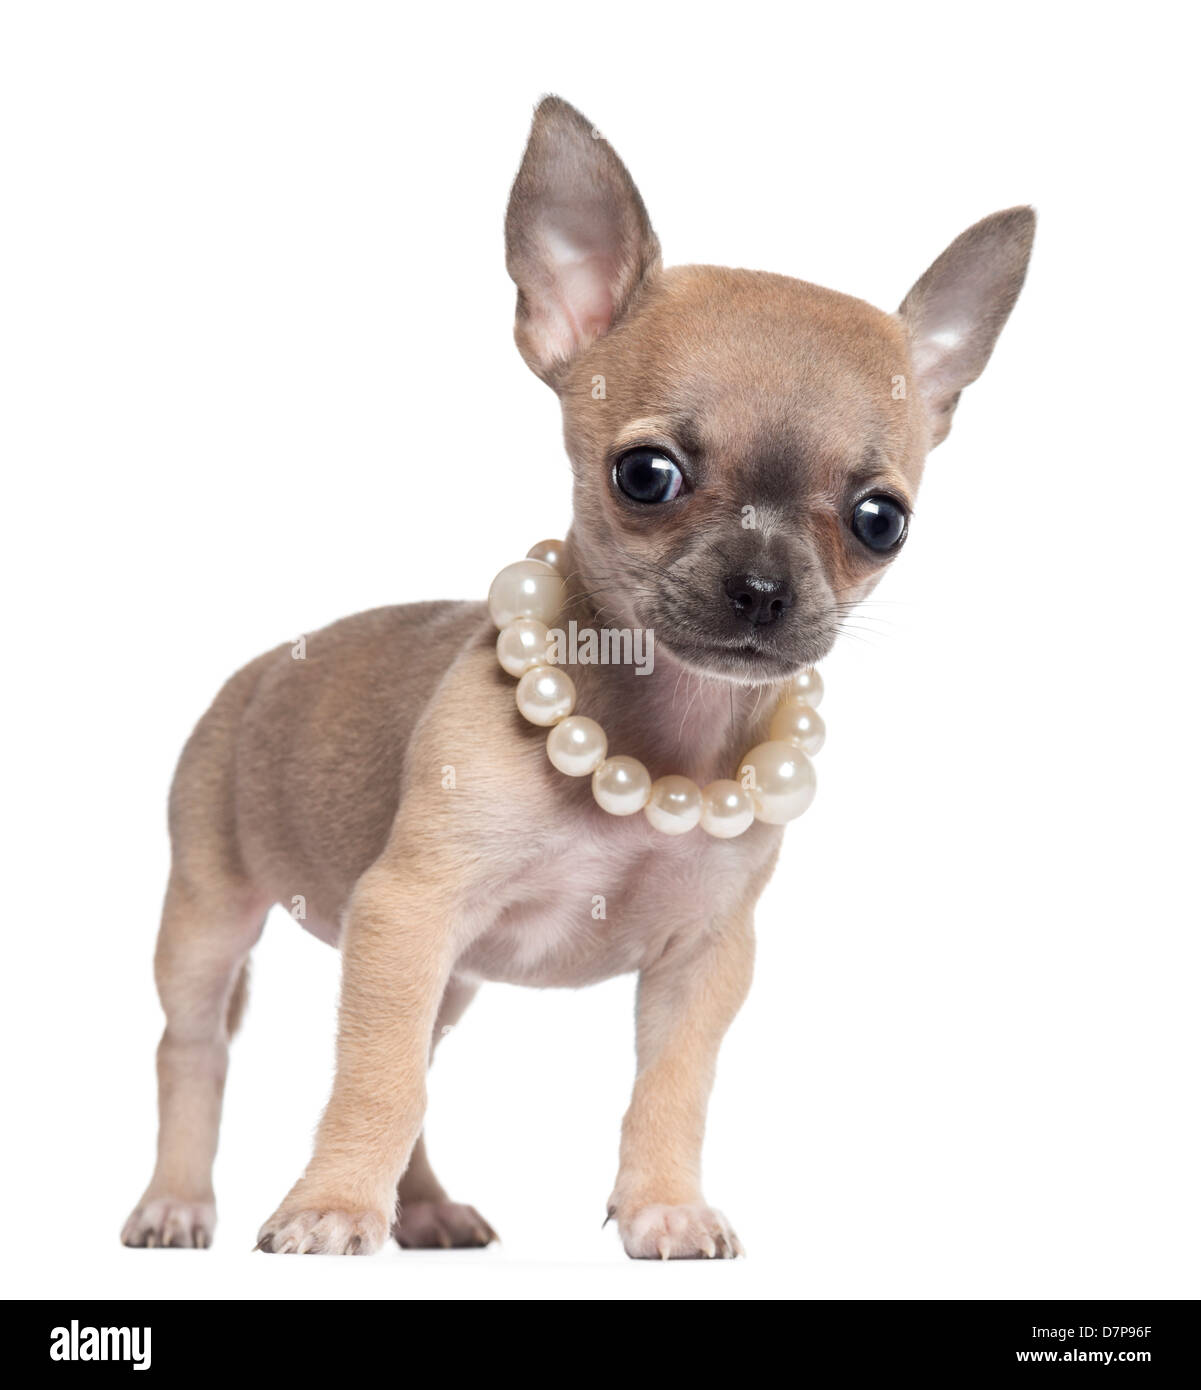 Chihuahua cachorro, de 4 meses de edad, vistiendo un collar de perlas y mirando la cámara contra el fondo blanco. Foto de stock